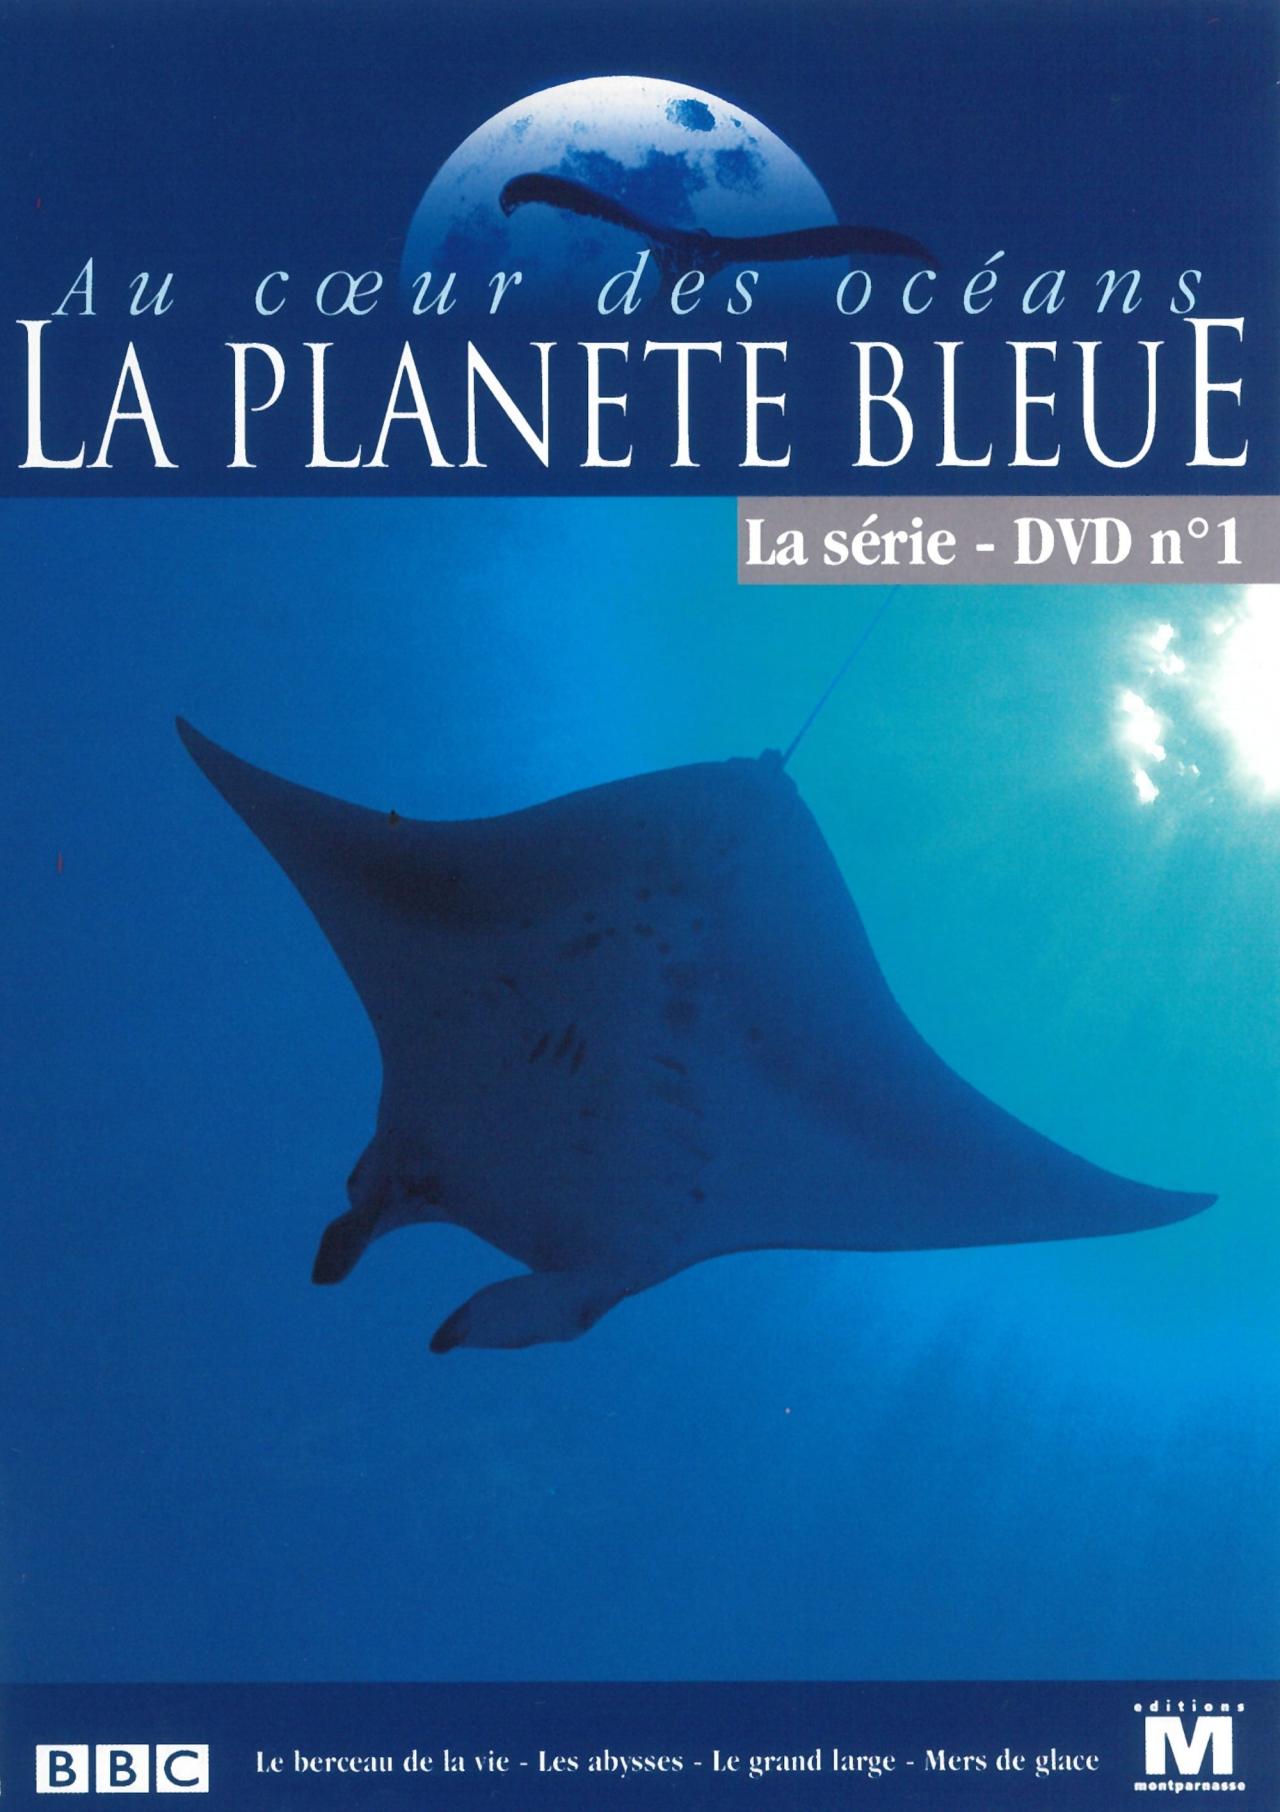 Les saisons de Au coeur des océans - La Planète bleue sont-elles disponibles sur Netflix ou autre ?